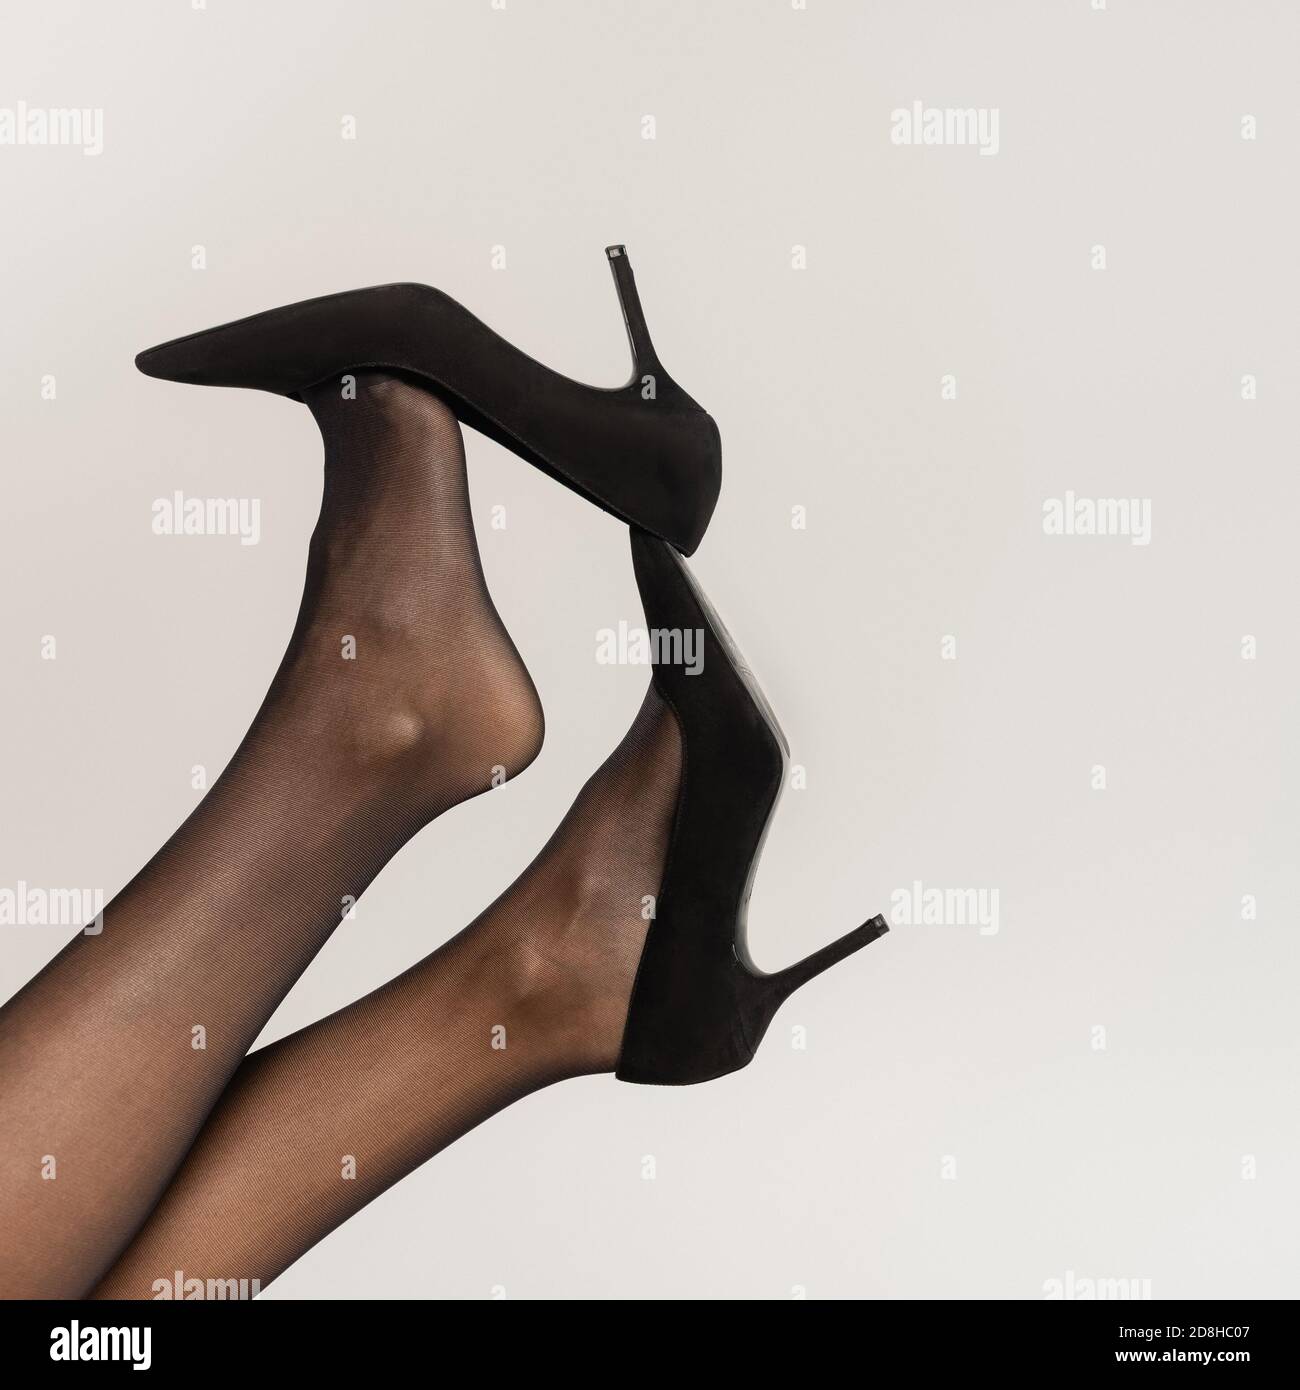 Premium Photo  Closeup photo of long slim female legs in black